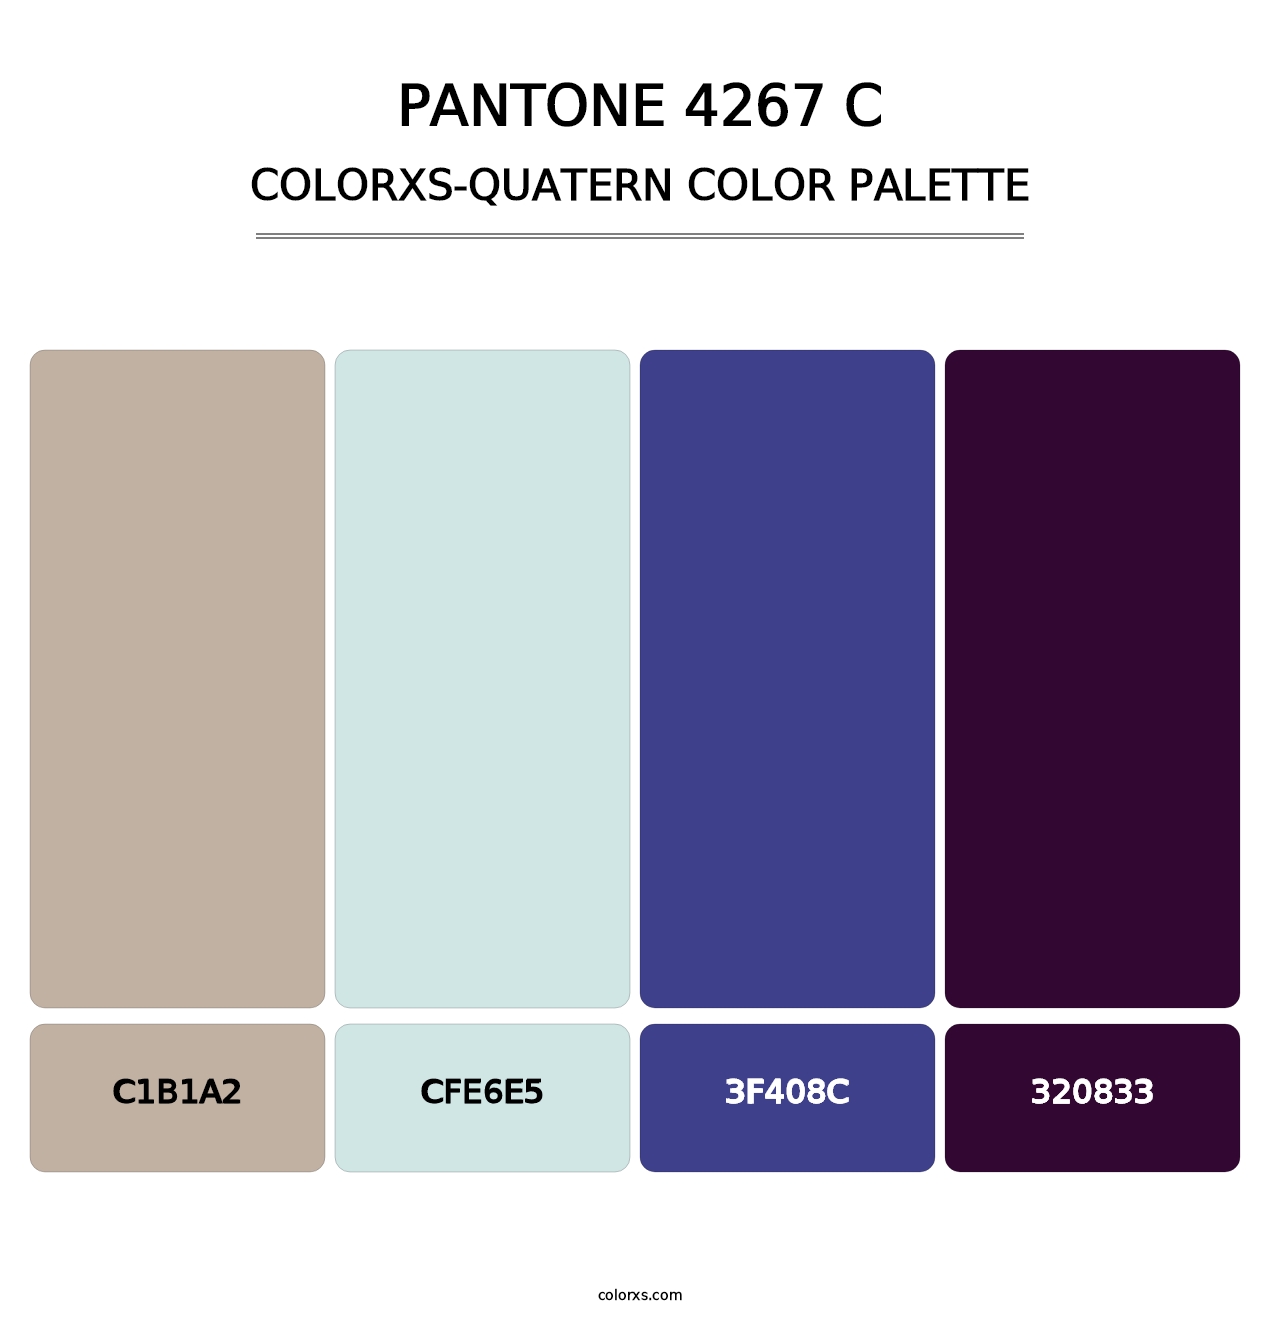 PANTONE 4267 C - Colorxs Quatern Palette